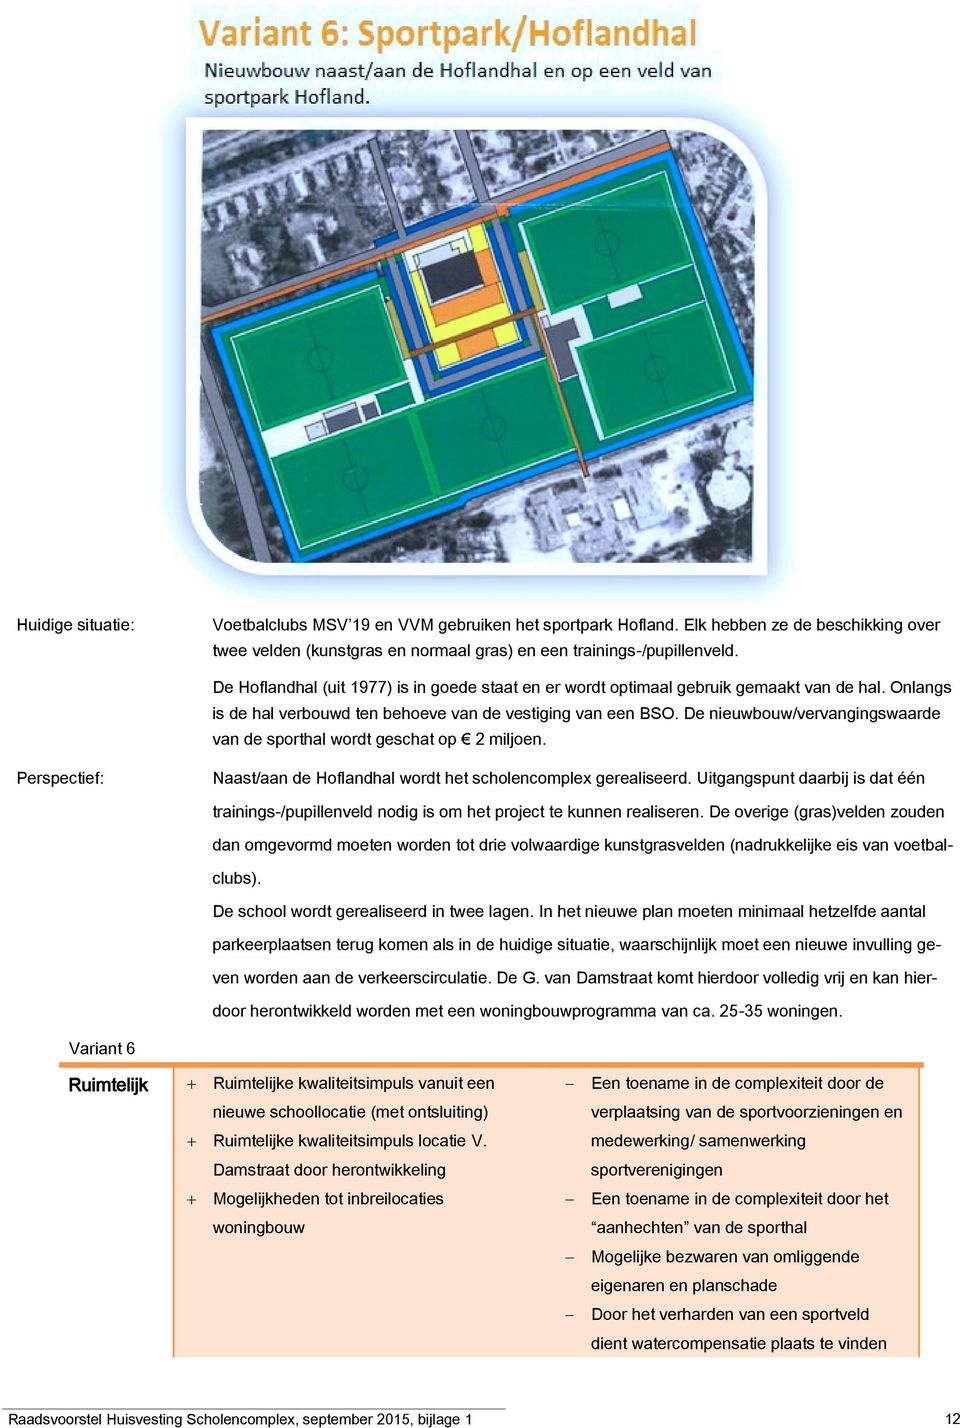 De nieuwbouw/vervangingswaarde van de sporthal wordt geschat op 2 miljoen. Perspectief: Naast/aan de Hoflandhal wordt het scholencomplex gerealiseerd.